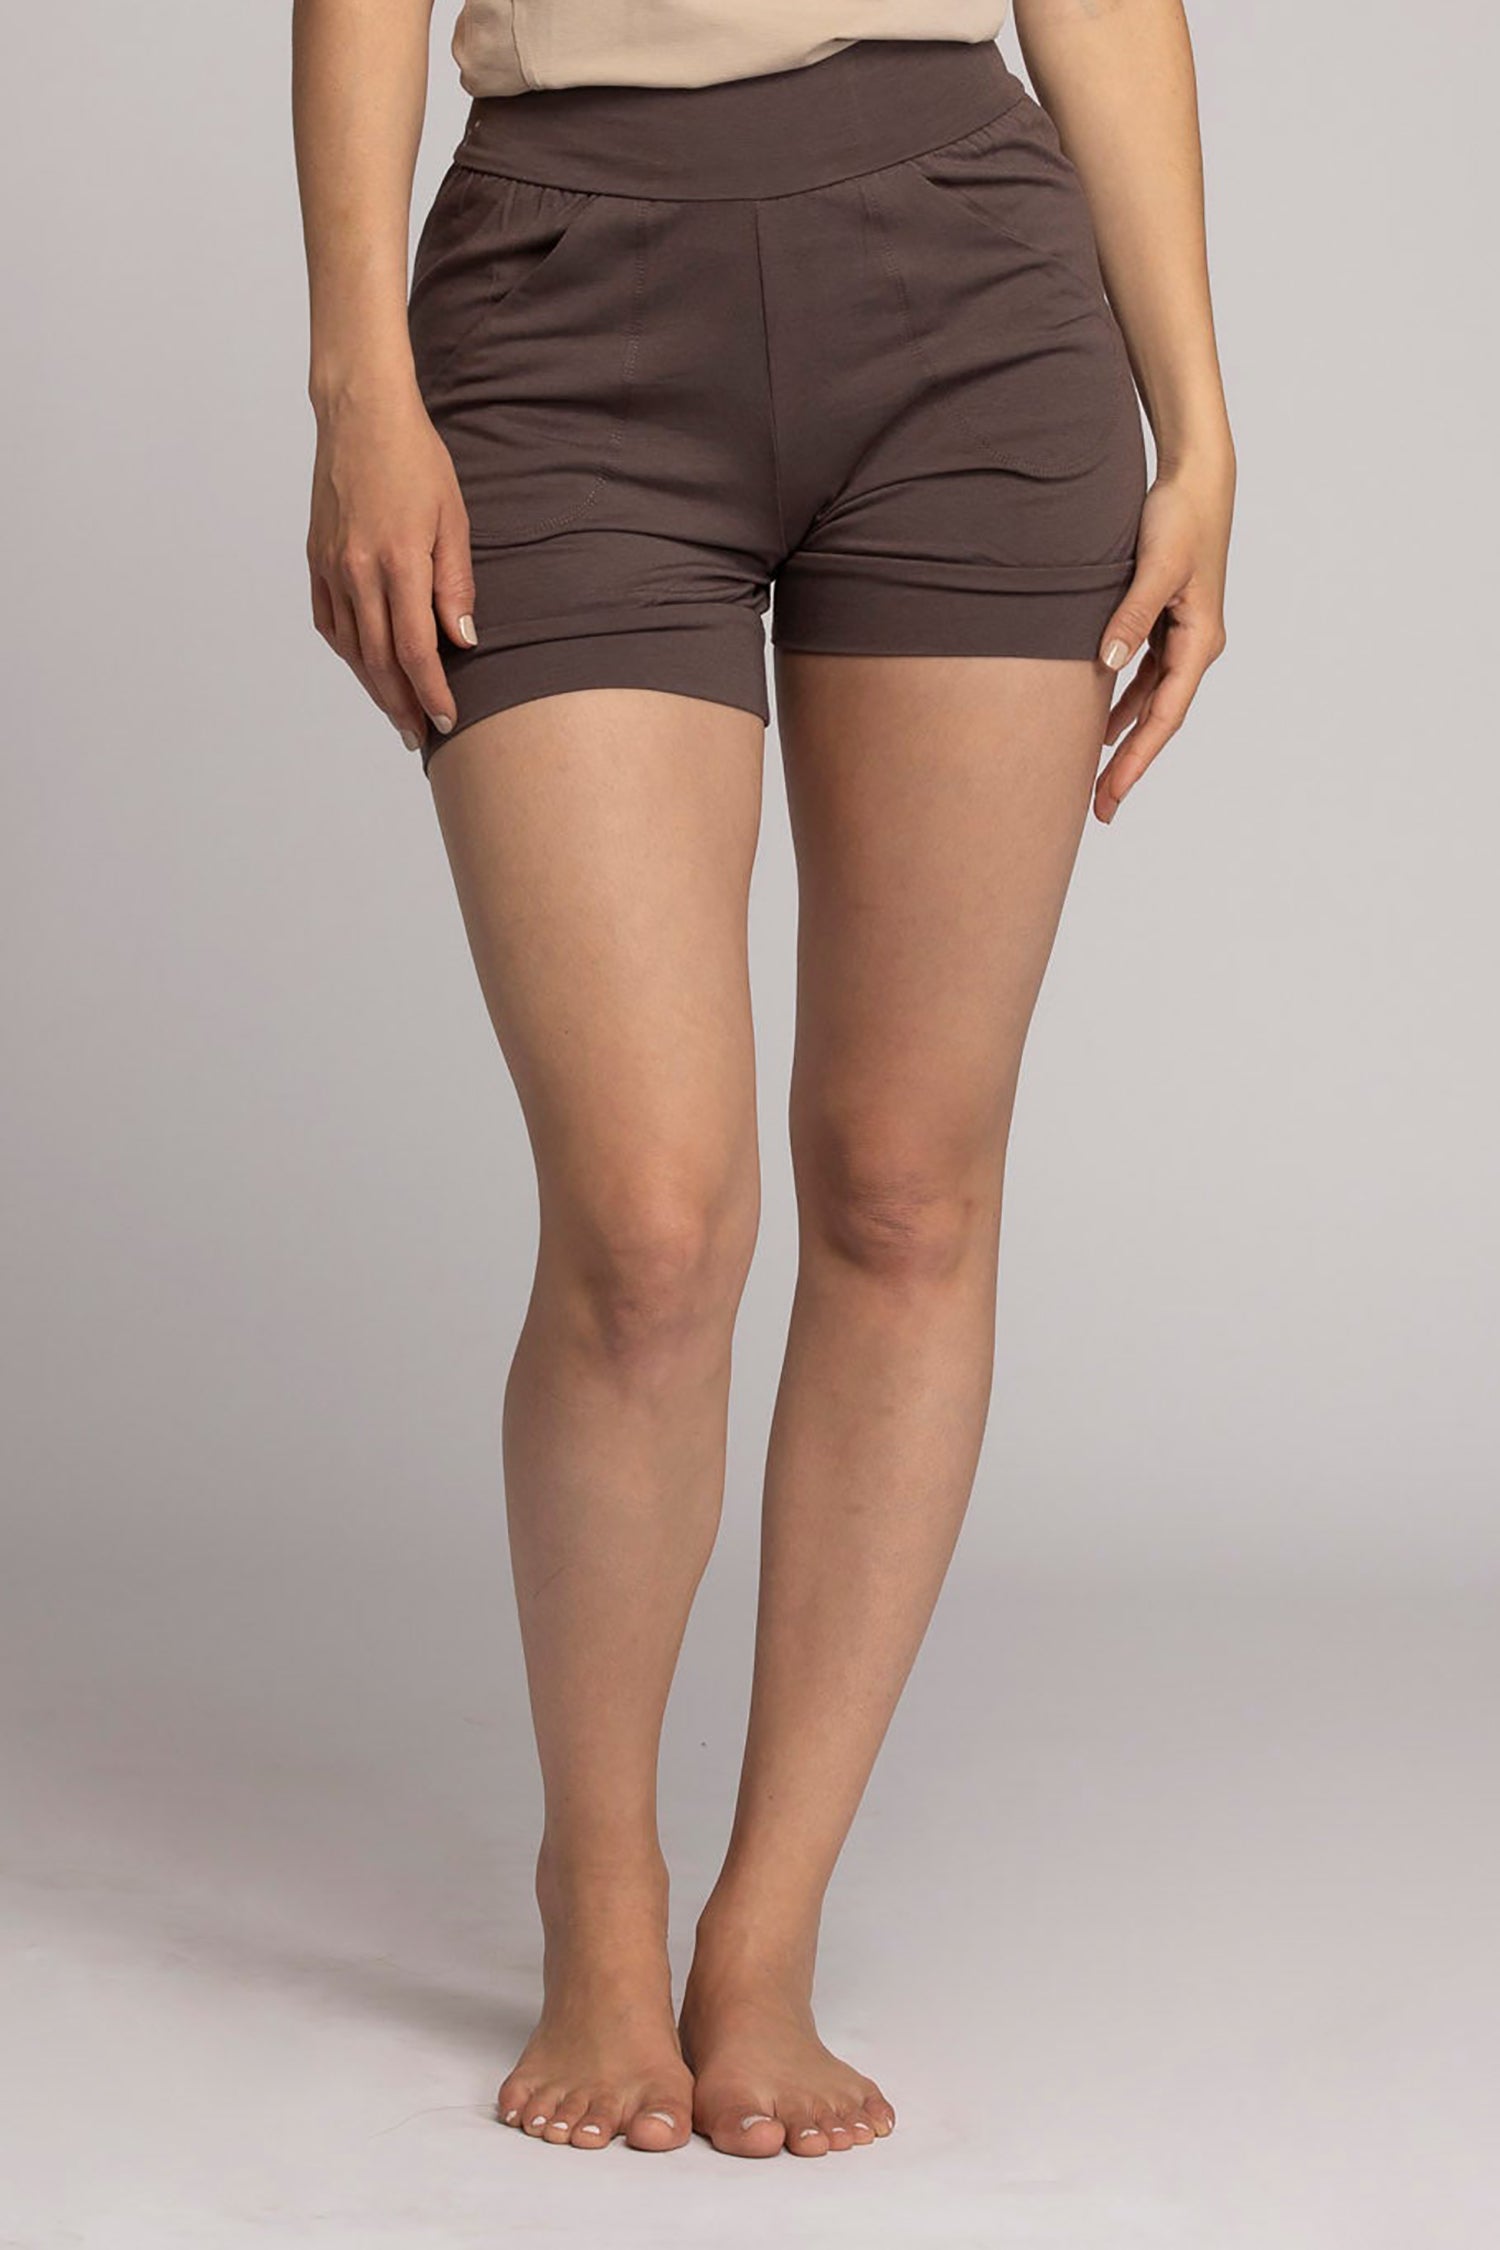 Kayla yoga shorts